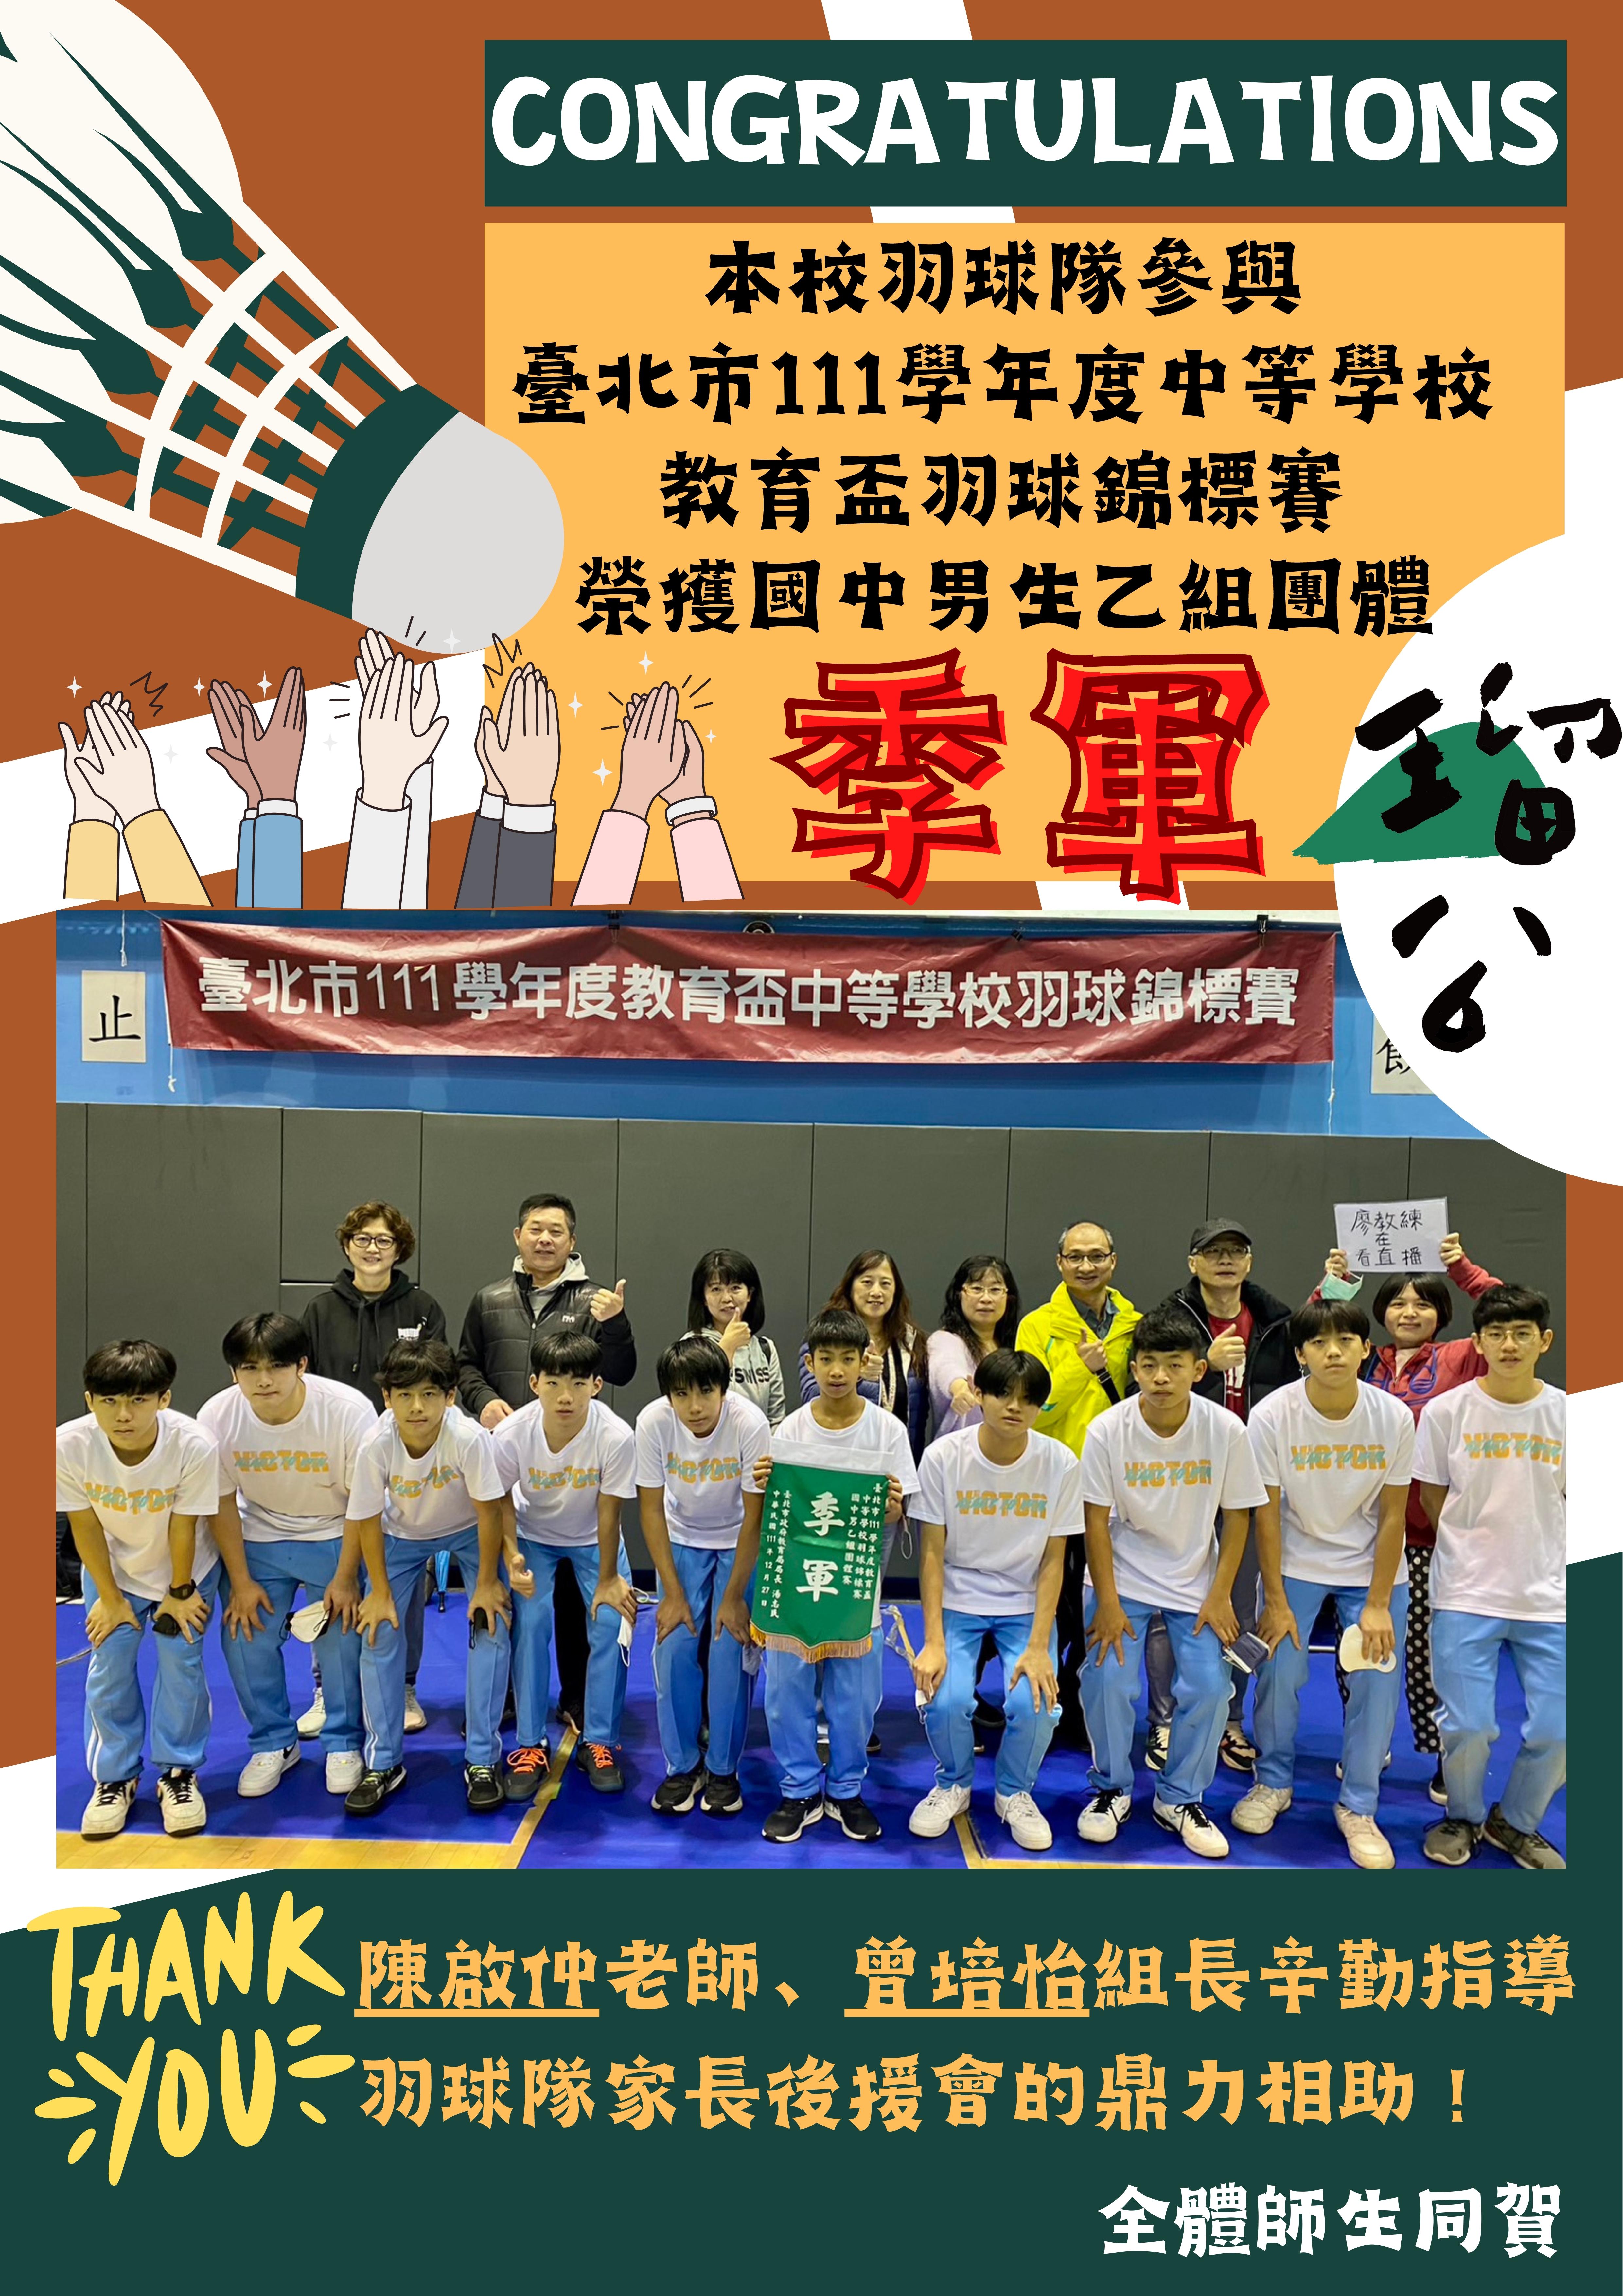 本校羽球隊參與臺北市111學年教育盃羽球賽 榮獲國男乙團季軍